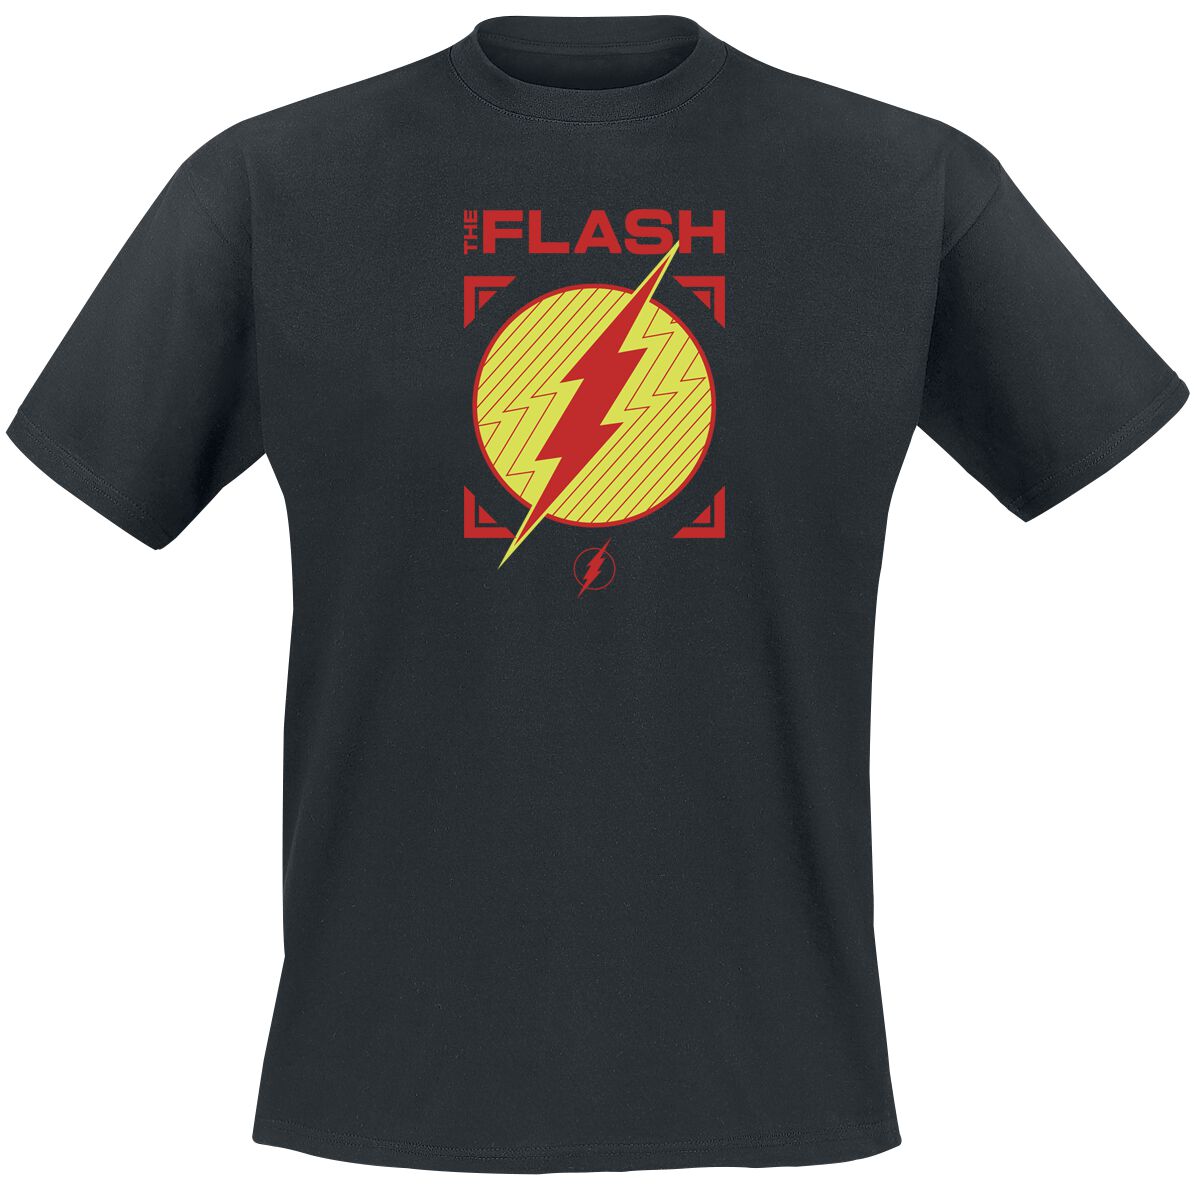 The Flash - DC Comics T-Shirt - Flash - Central City All Stars - S bis XXL - für Männer - Größe S - schwarz  - EMP exklusives Merchandise! von The Flash